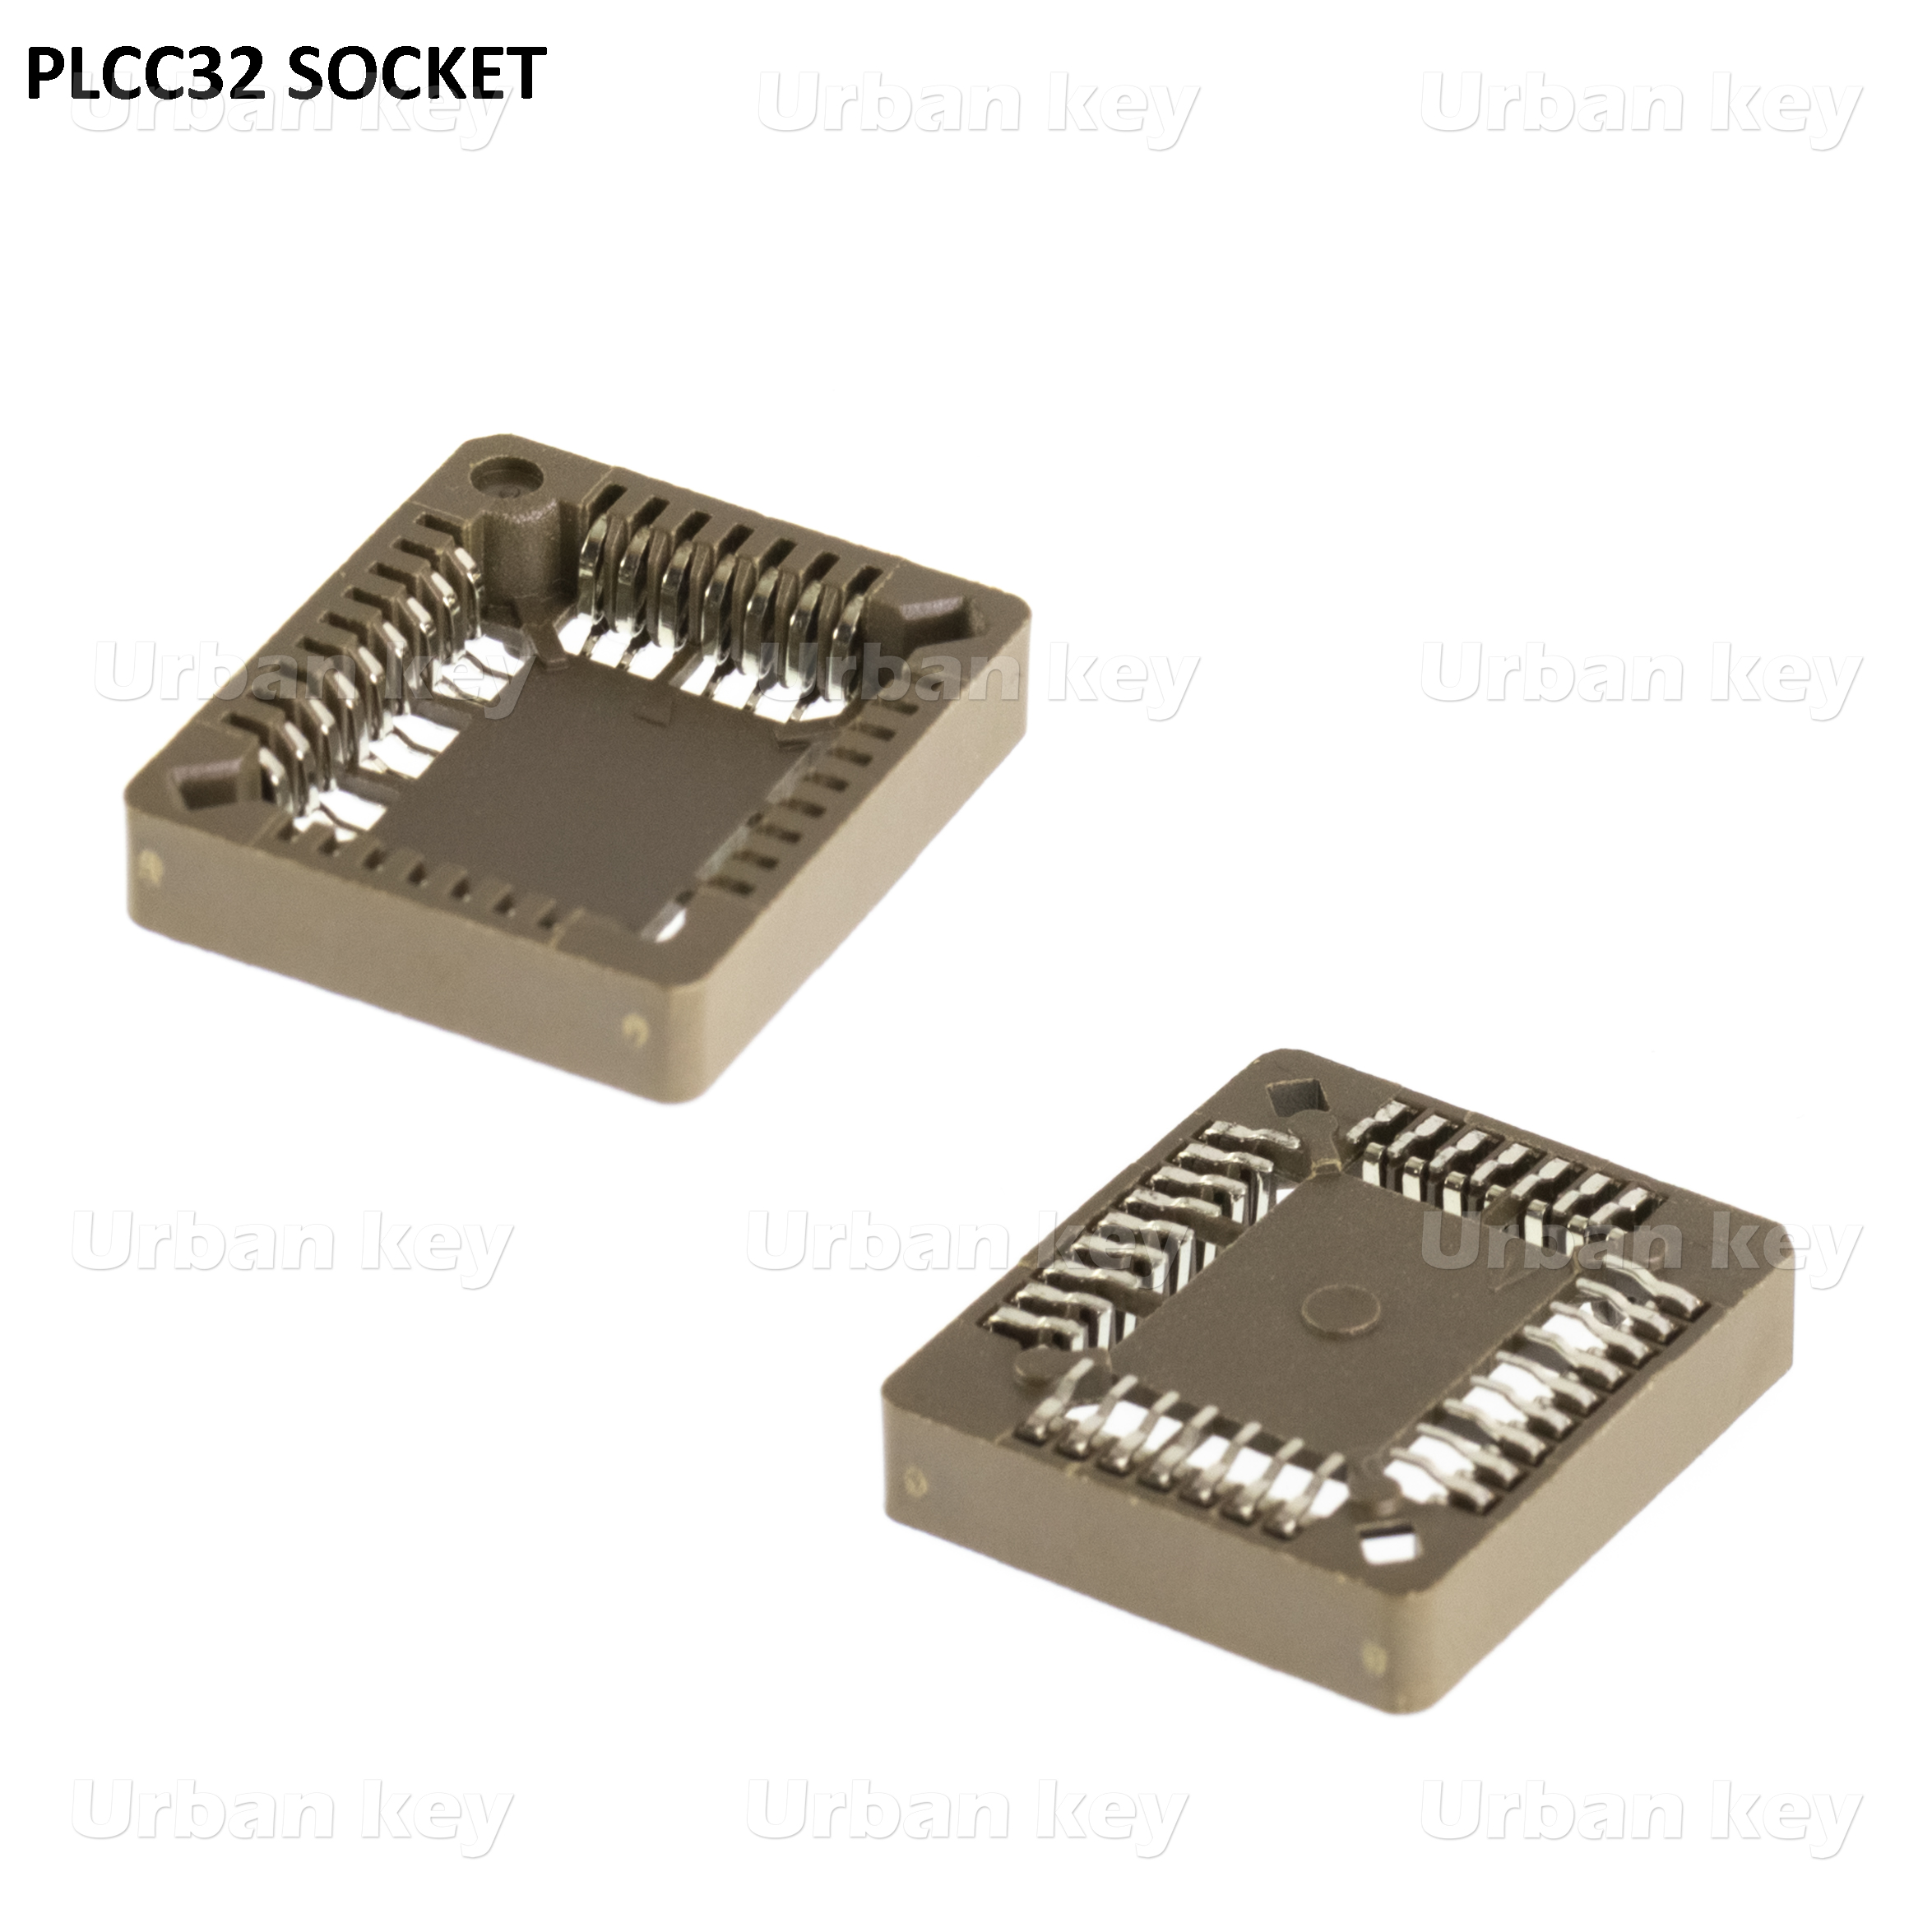 SOCKET PLCC32 PARA MICROCONTROLADOR